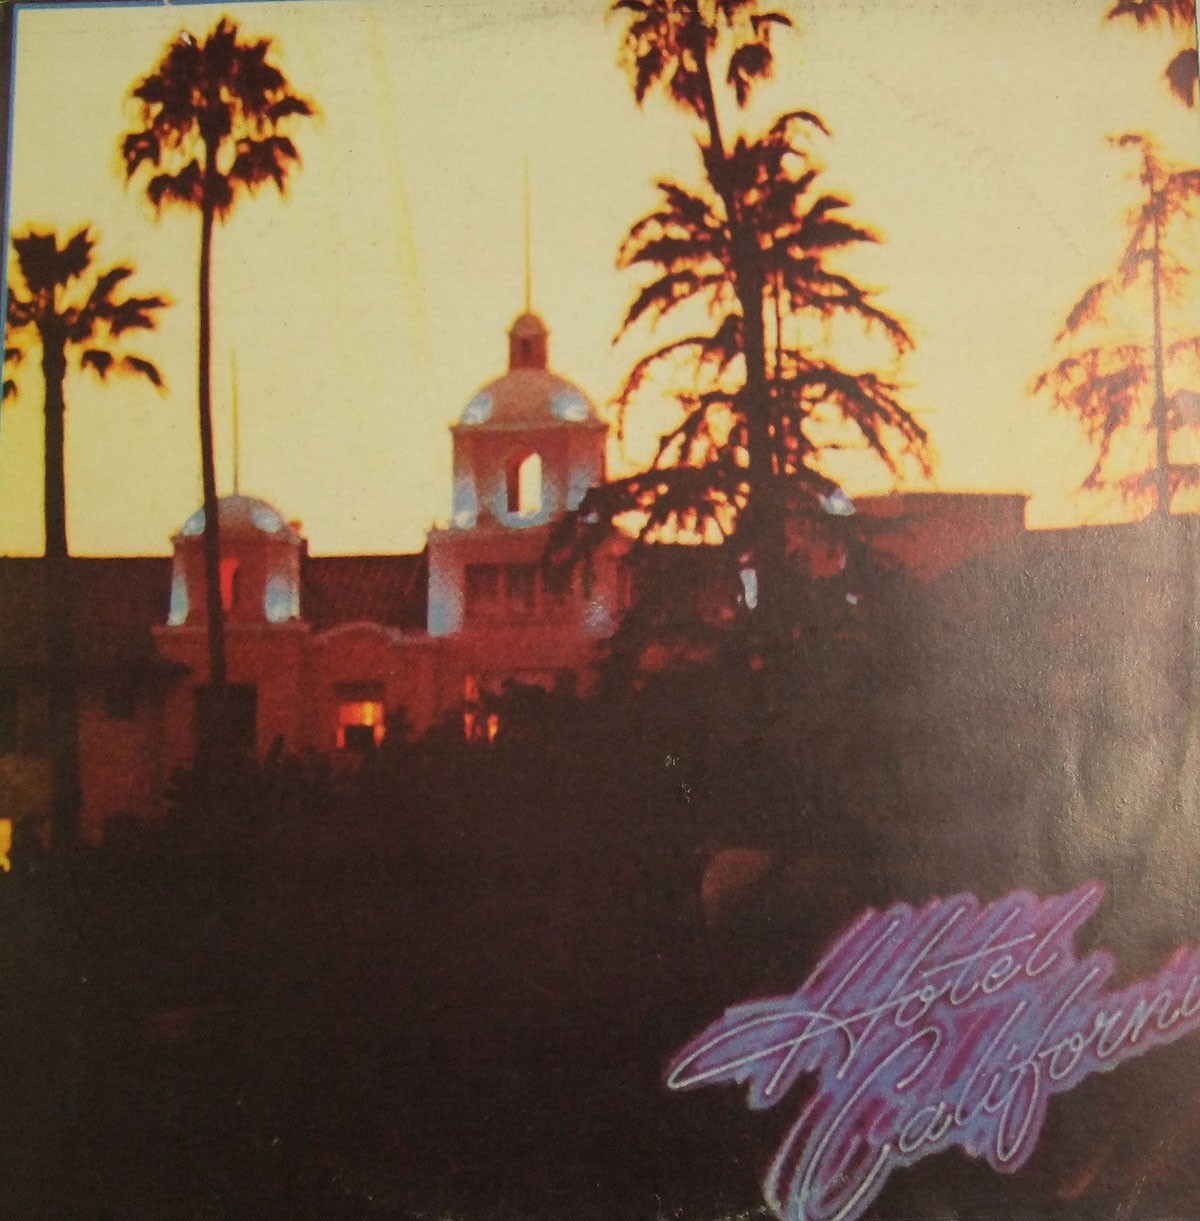 老鹰乐队专辑封面“加州旅馆”